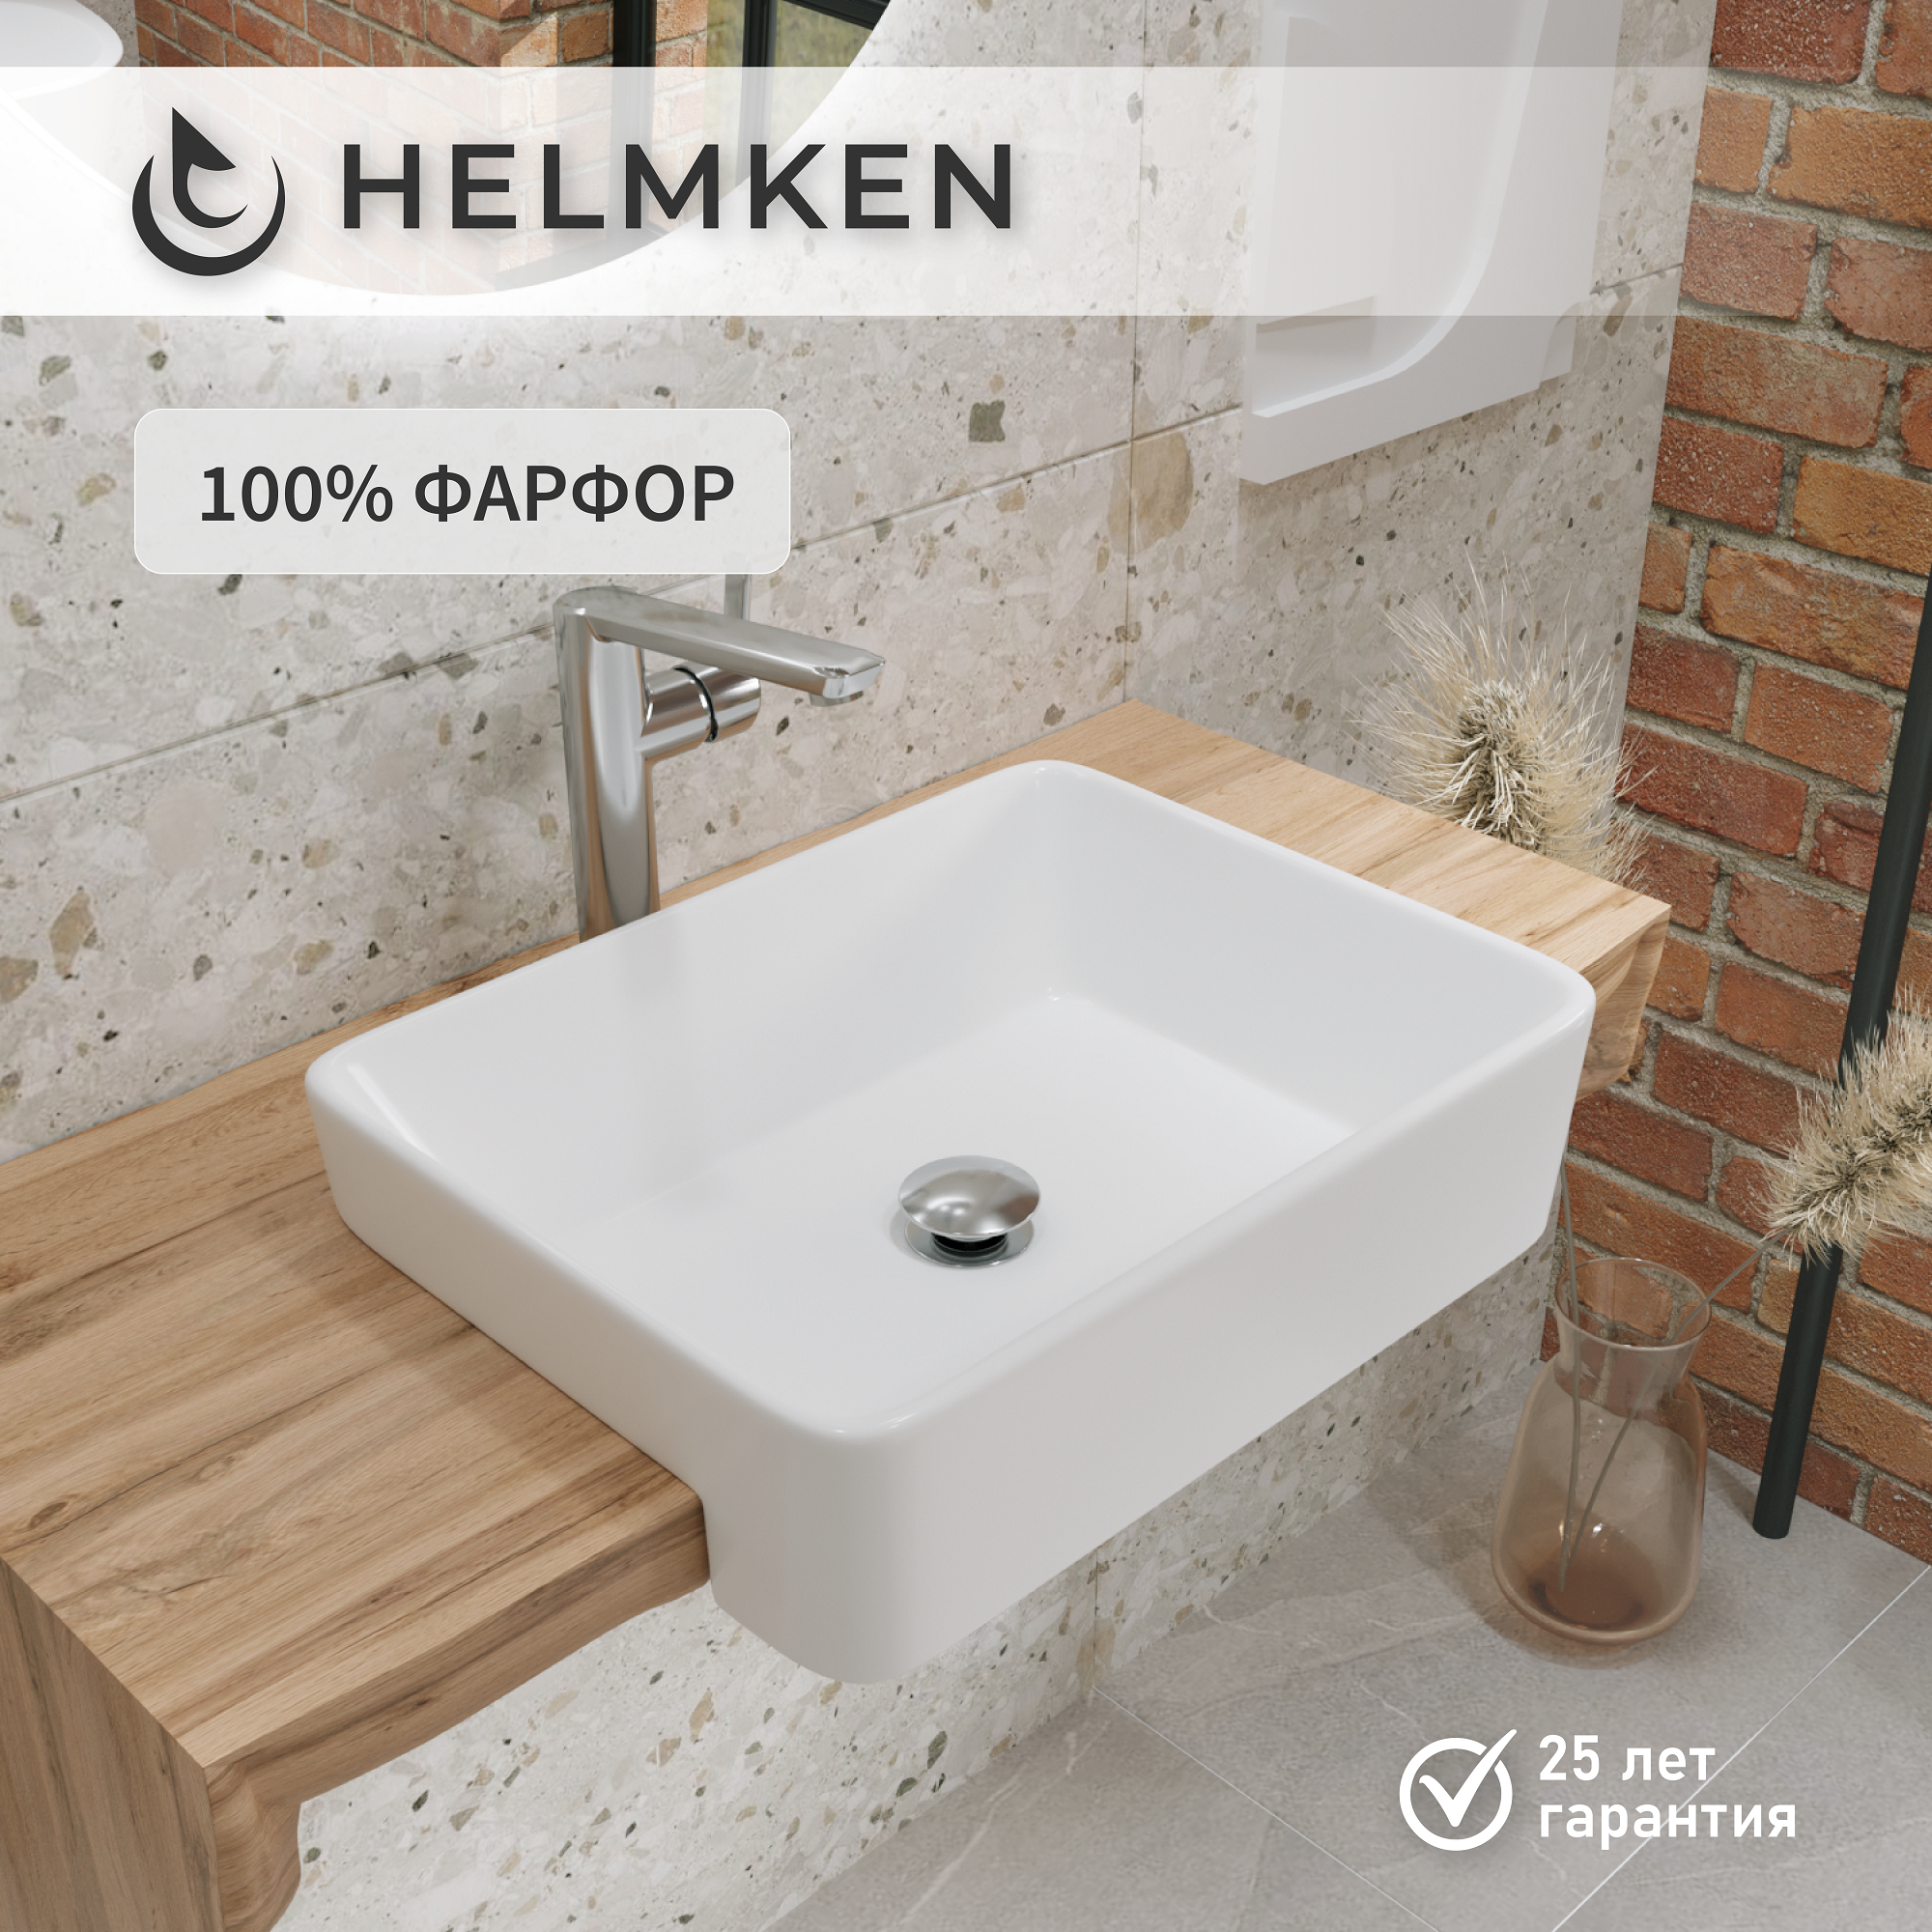 Накладная раковина в ванную Helmken 67548000: умывальник прямоугольный из фарфора 48 см, белый цвет, гарантия 25 лет